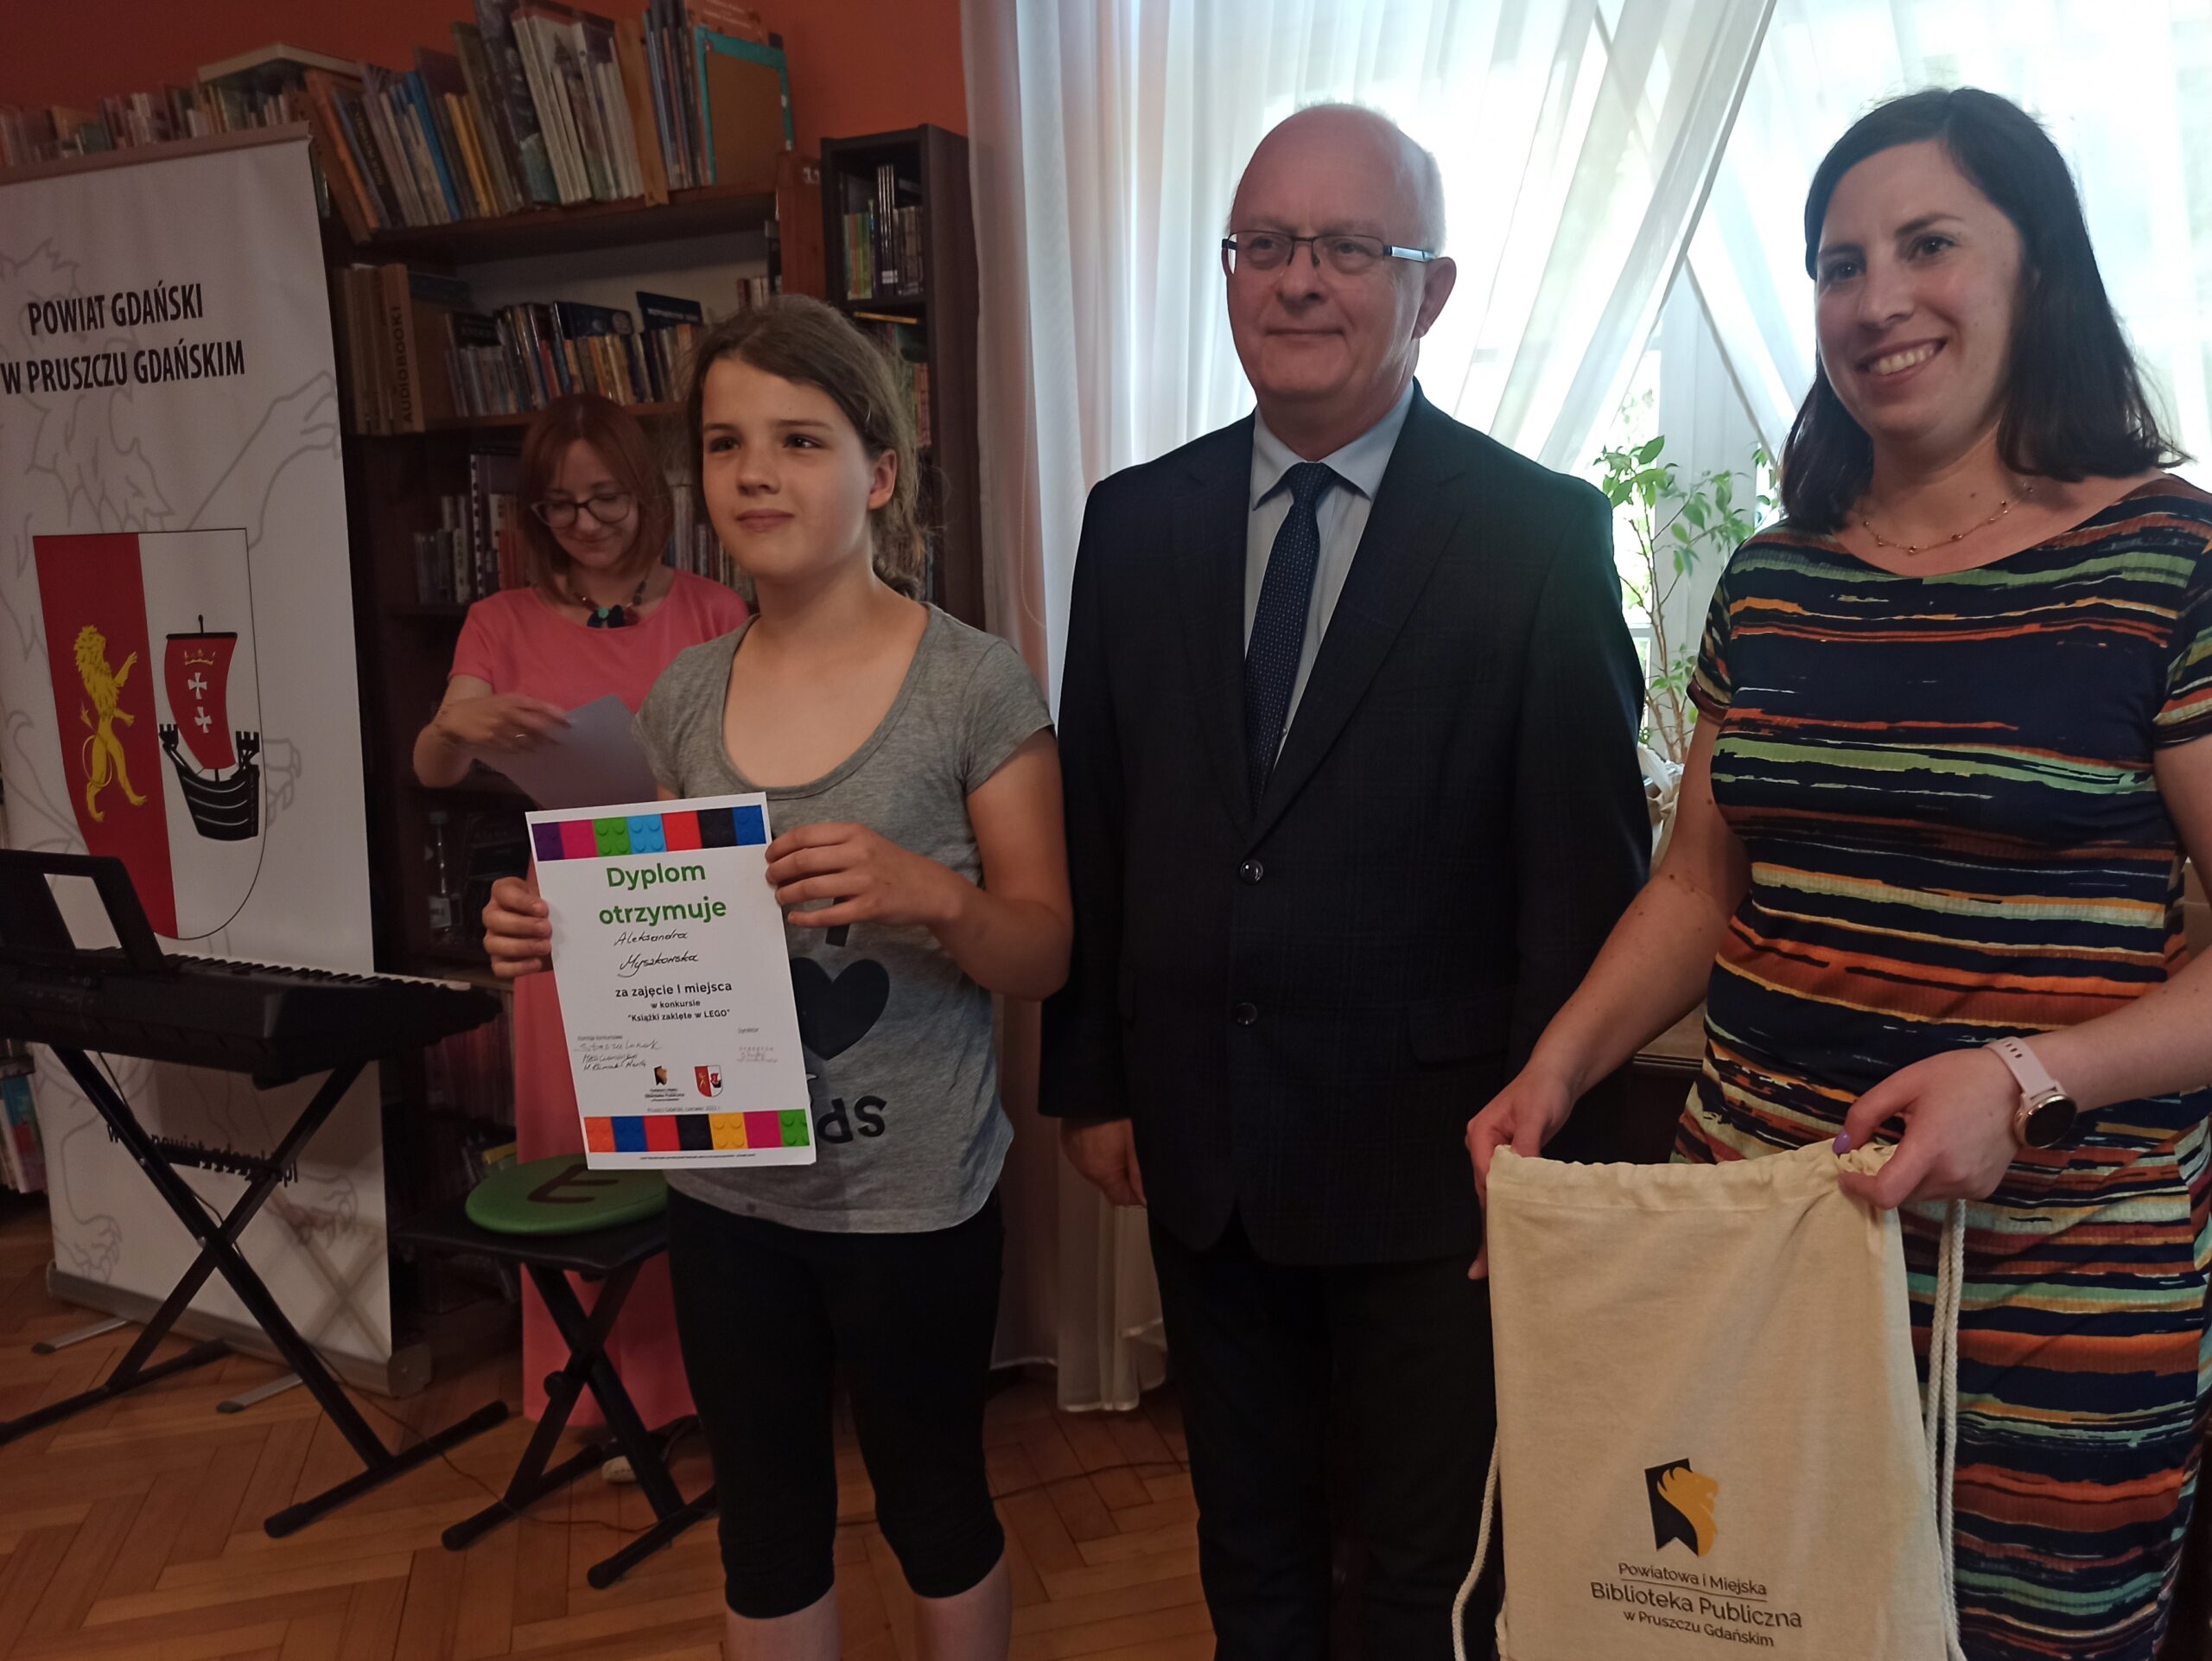 Dziewczynka oraz Starosta Marian Cichon i Natalia Błońska z Zarządu Powiatu Gdańskiego stoją razem i uśmiechają się. Dziewczynka trzyma w rękach dyplom oraz torbę materiałową. W tle regały z książkami.